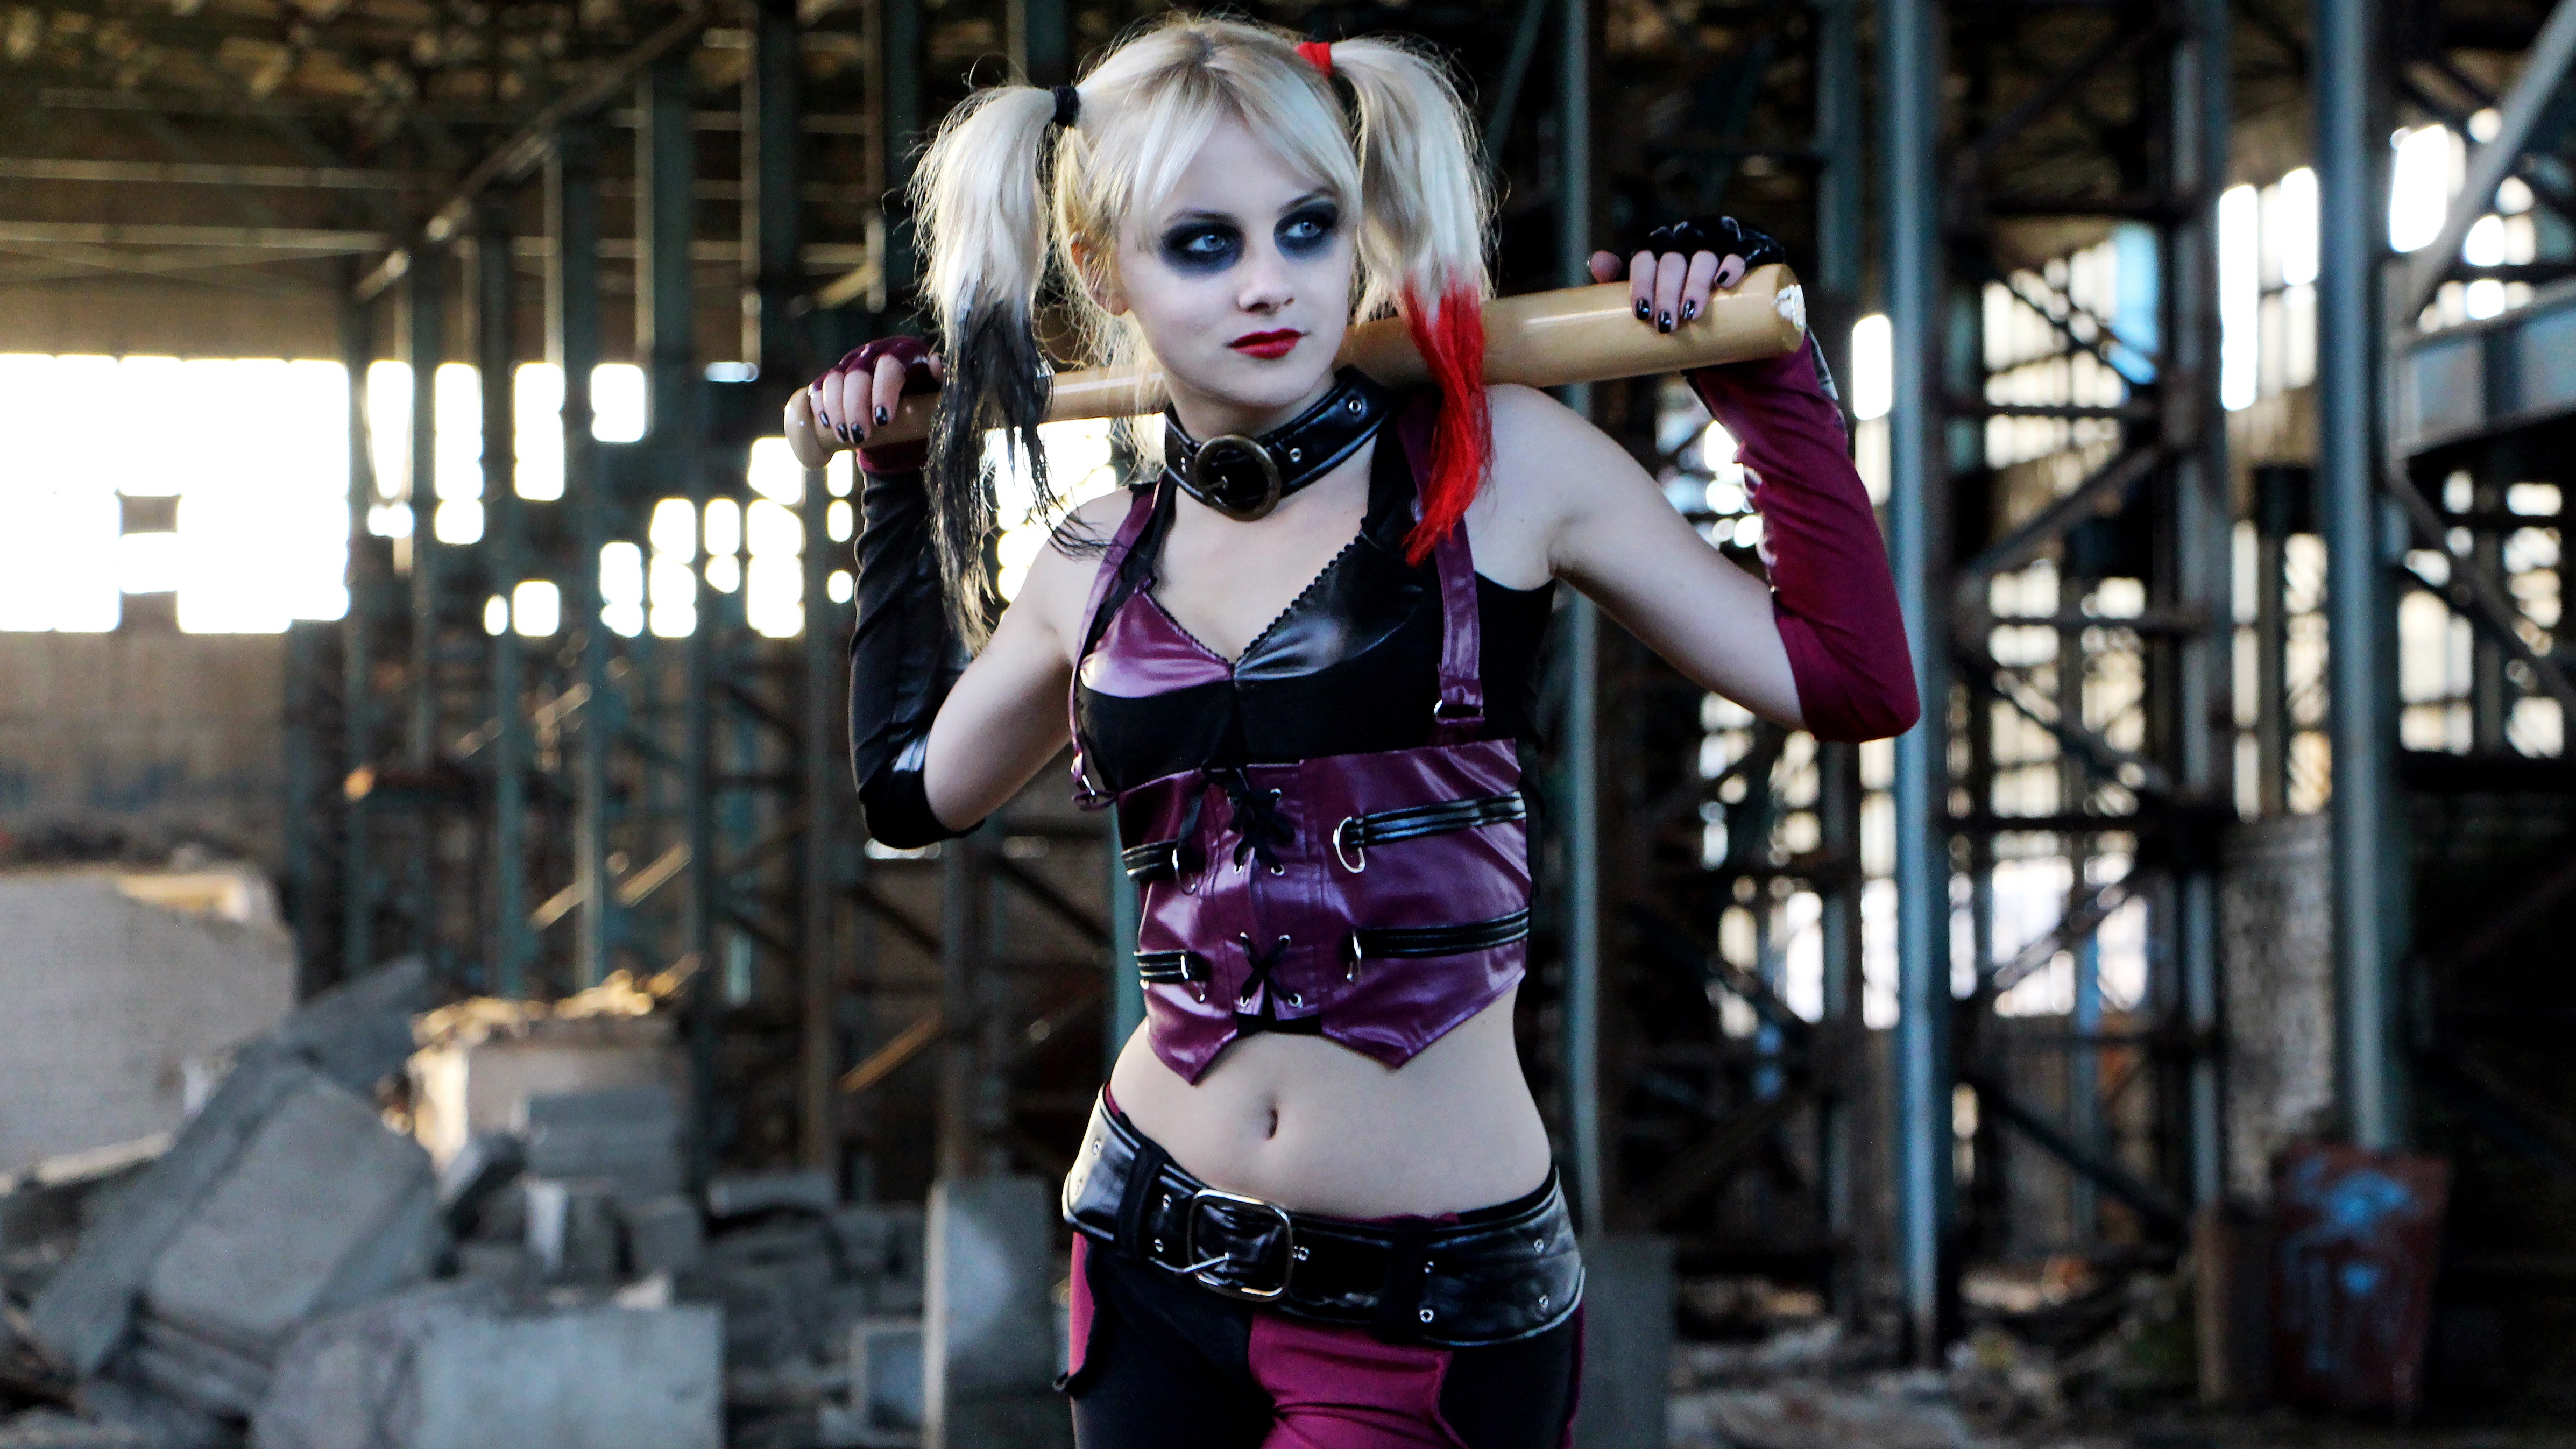 Harley Quinn by SvetaFrost